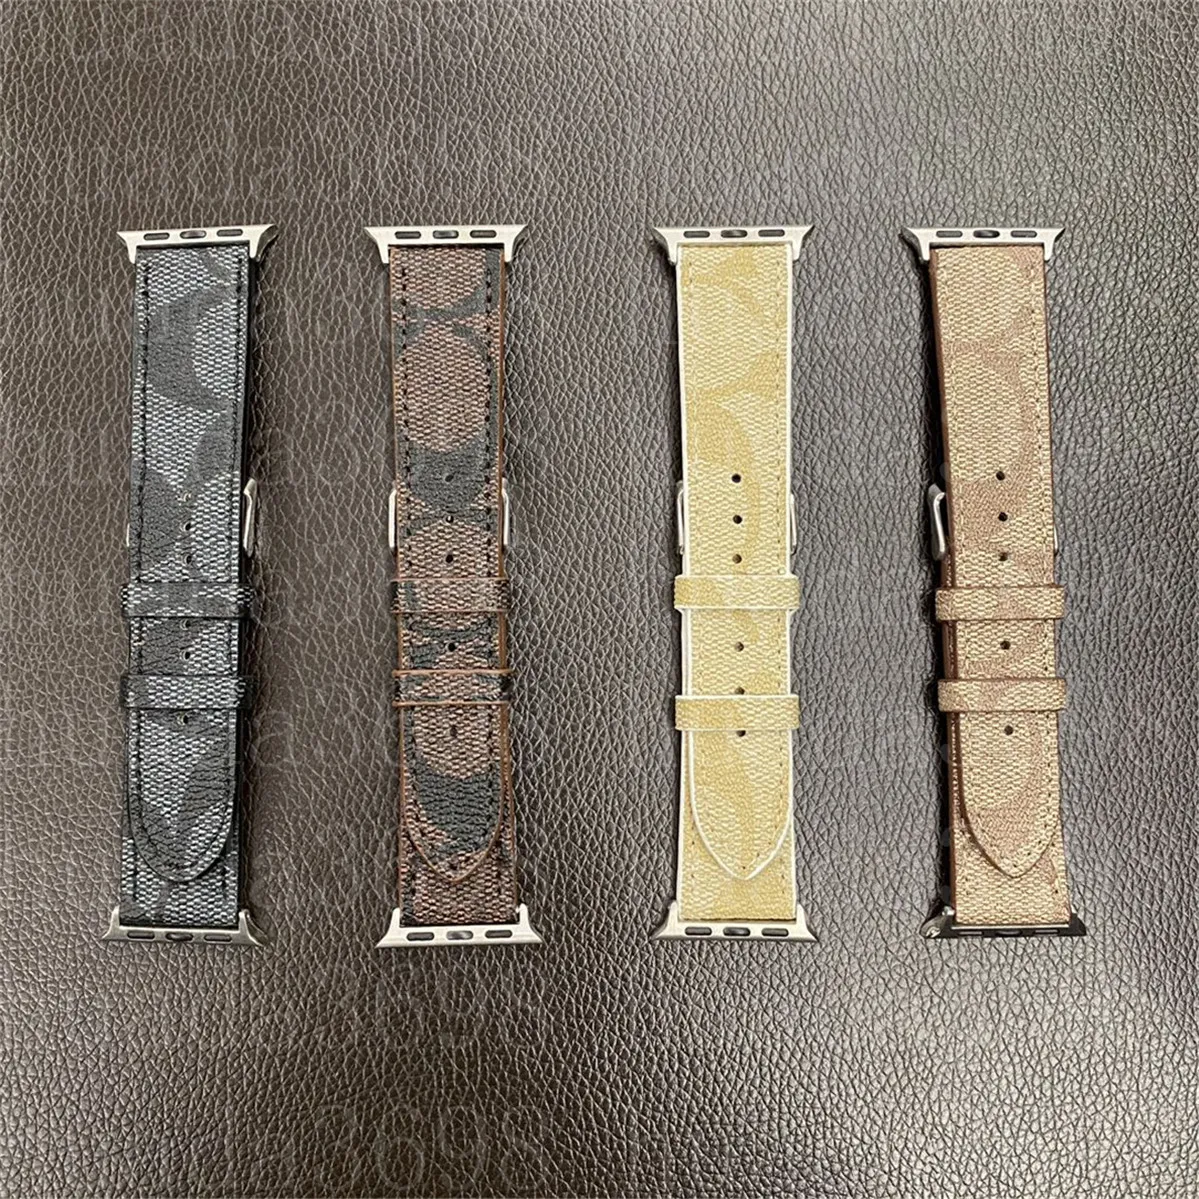 Bands de watchs Watch Band 38 mm 40 mm 41 mm 42 mm 44 mm 45 mm 49 mm pour iwatch 2 3 4 5 6 7 8 Remplacez des bandes bracelet bracelet sangle